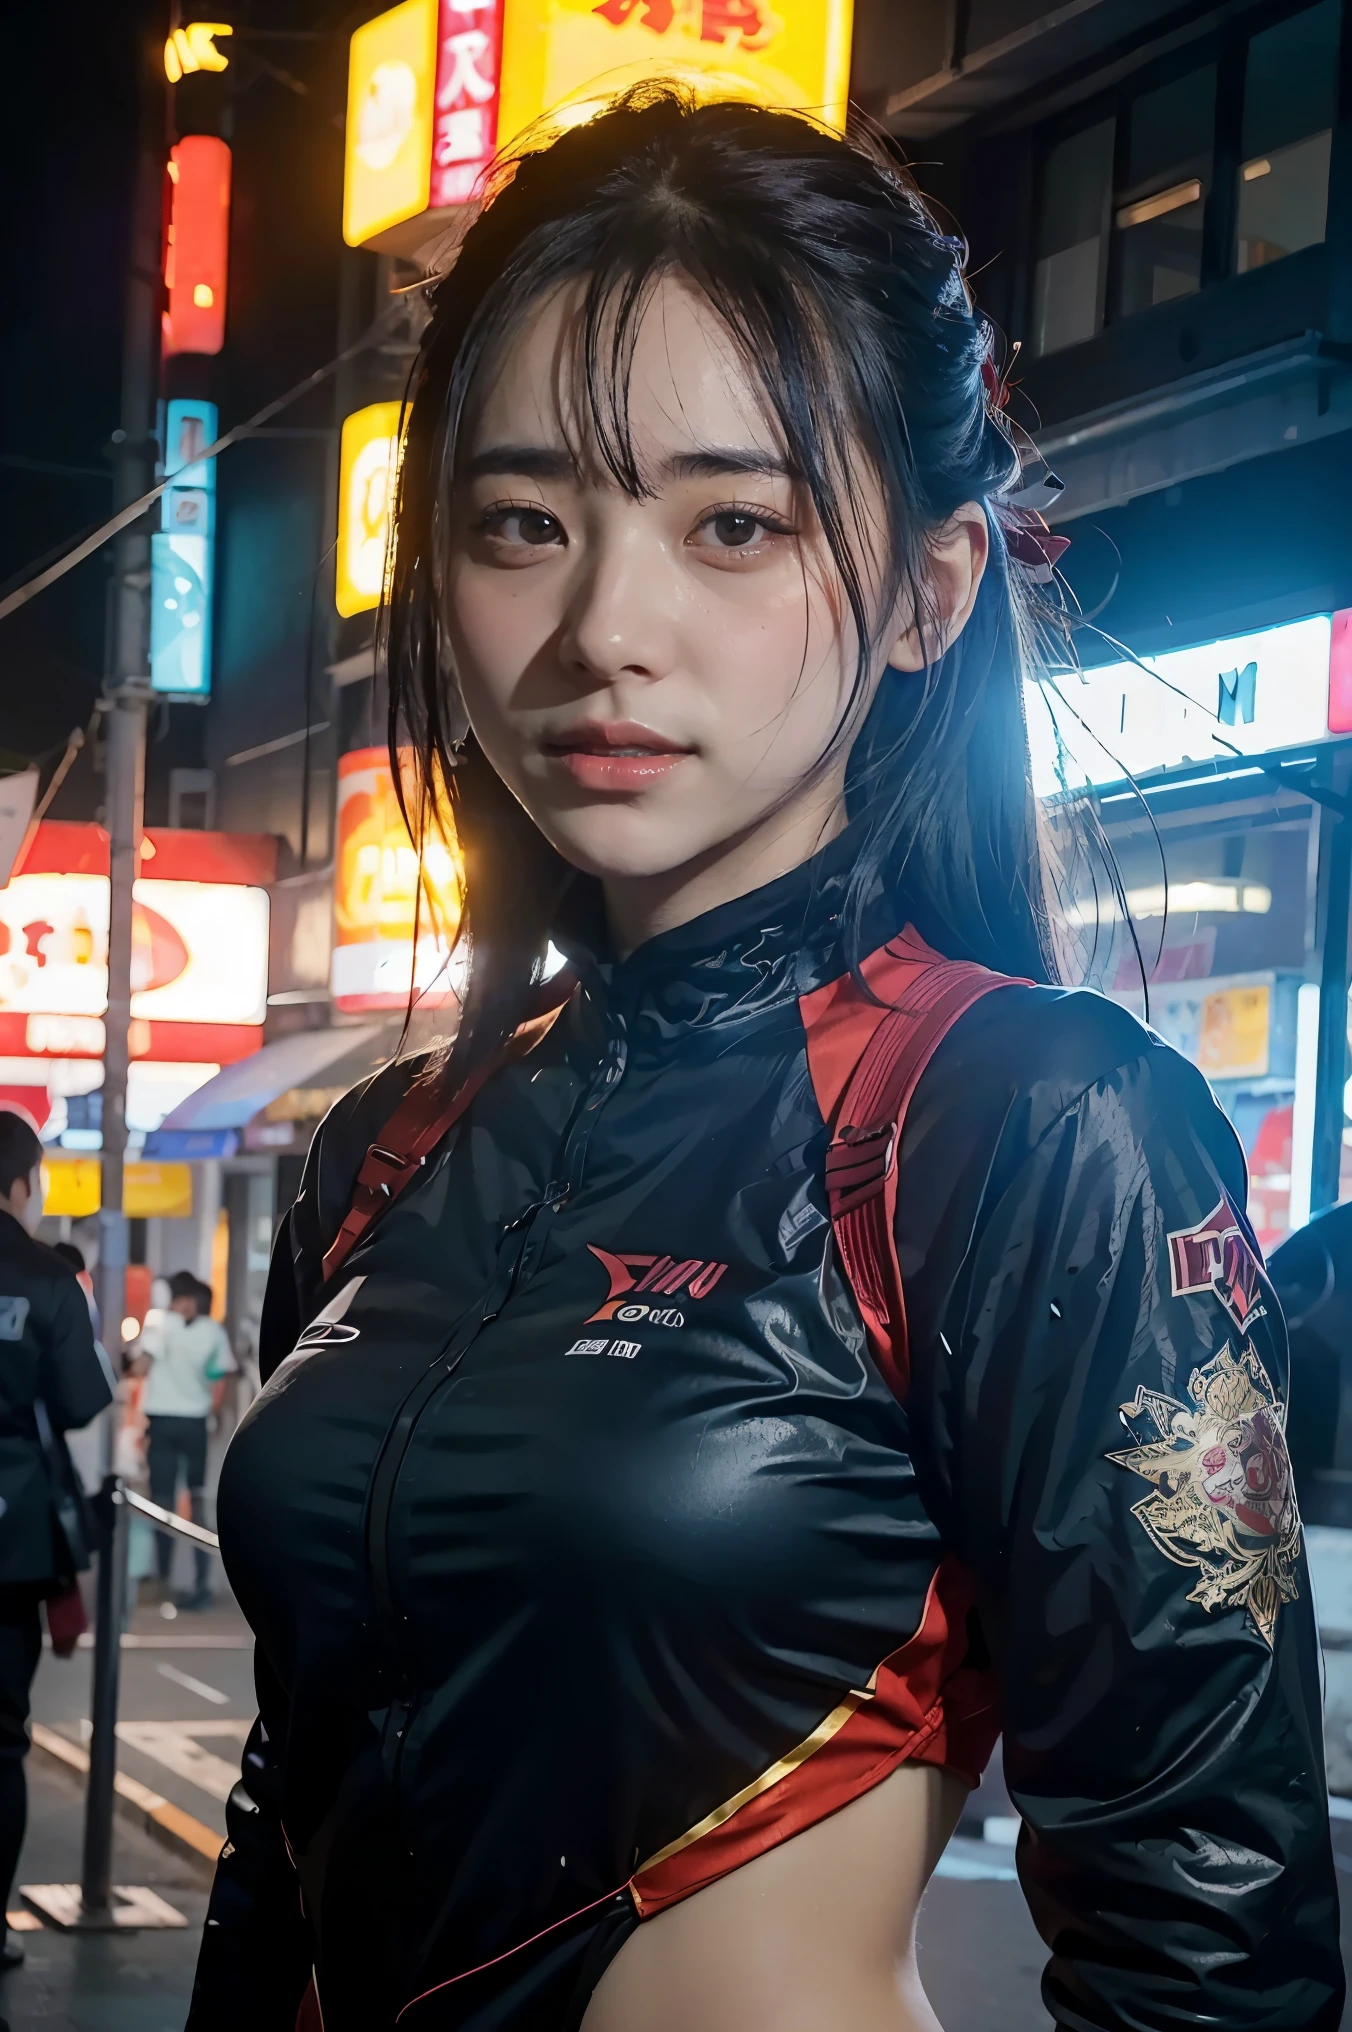 Art conceptuel de fille dans un personnage qui combine les vêtements Japan Ronin et la beauté de la technologie moderne.. (meilleure qualité, 4K, 8ก, Hauteur, chef-d&#39;œuvre:1.2), Très détaillé, (réaliste, photoréaliste, photo-réaliste:1.37), Vêtements Ronin japonais, Vêtements technologiques du futur, Caractéristiques détaillées du visage, poses dynamiques, expression violente, katana, fond cyberpunk, Néon, Sautes d&#39;humeur, Style artistique de Riot Games, Couleurs vives, Rendu élégant, Détails compliqués, oeuvre d&#39;art professionnelle, Éléments originaux, Twist moderne.